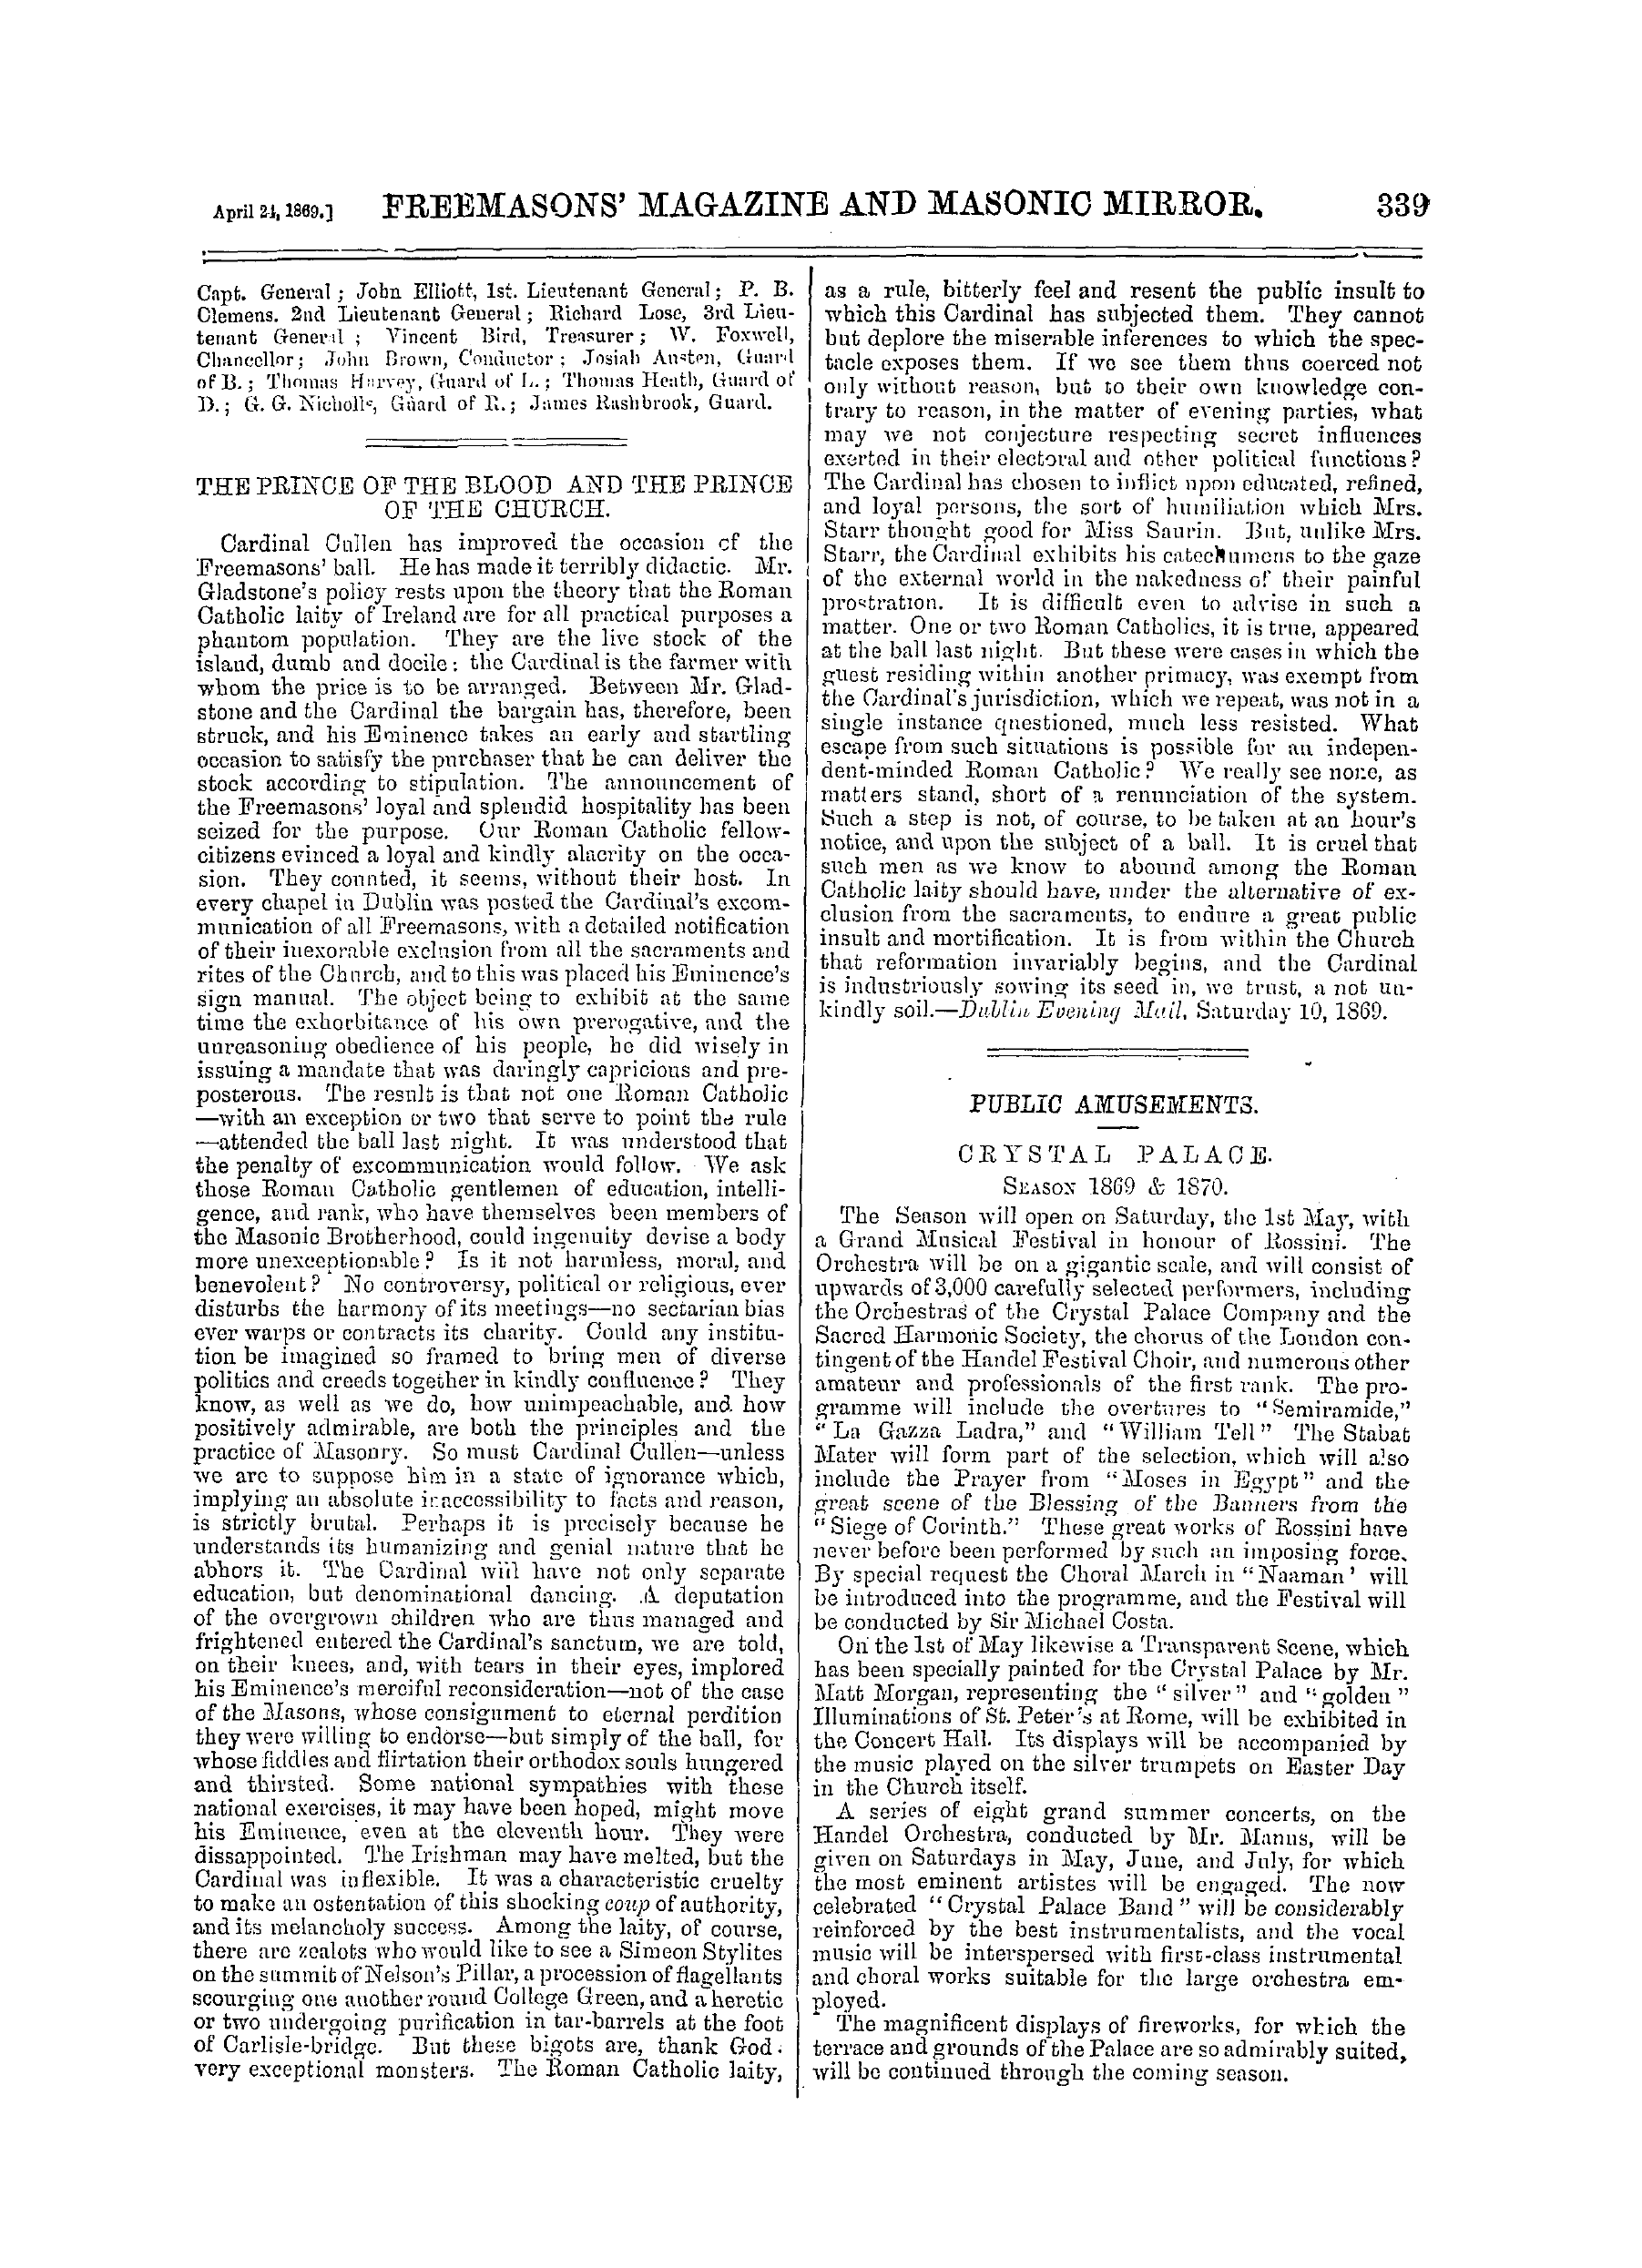 The Freemasons' Monthly Magazine: 1869-04-24: 19